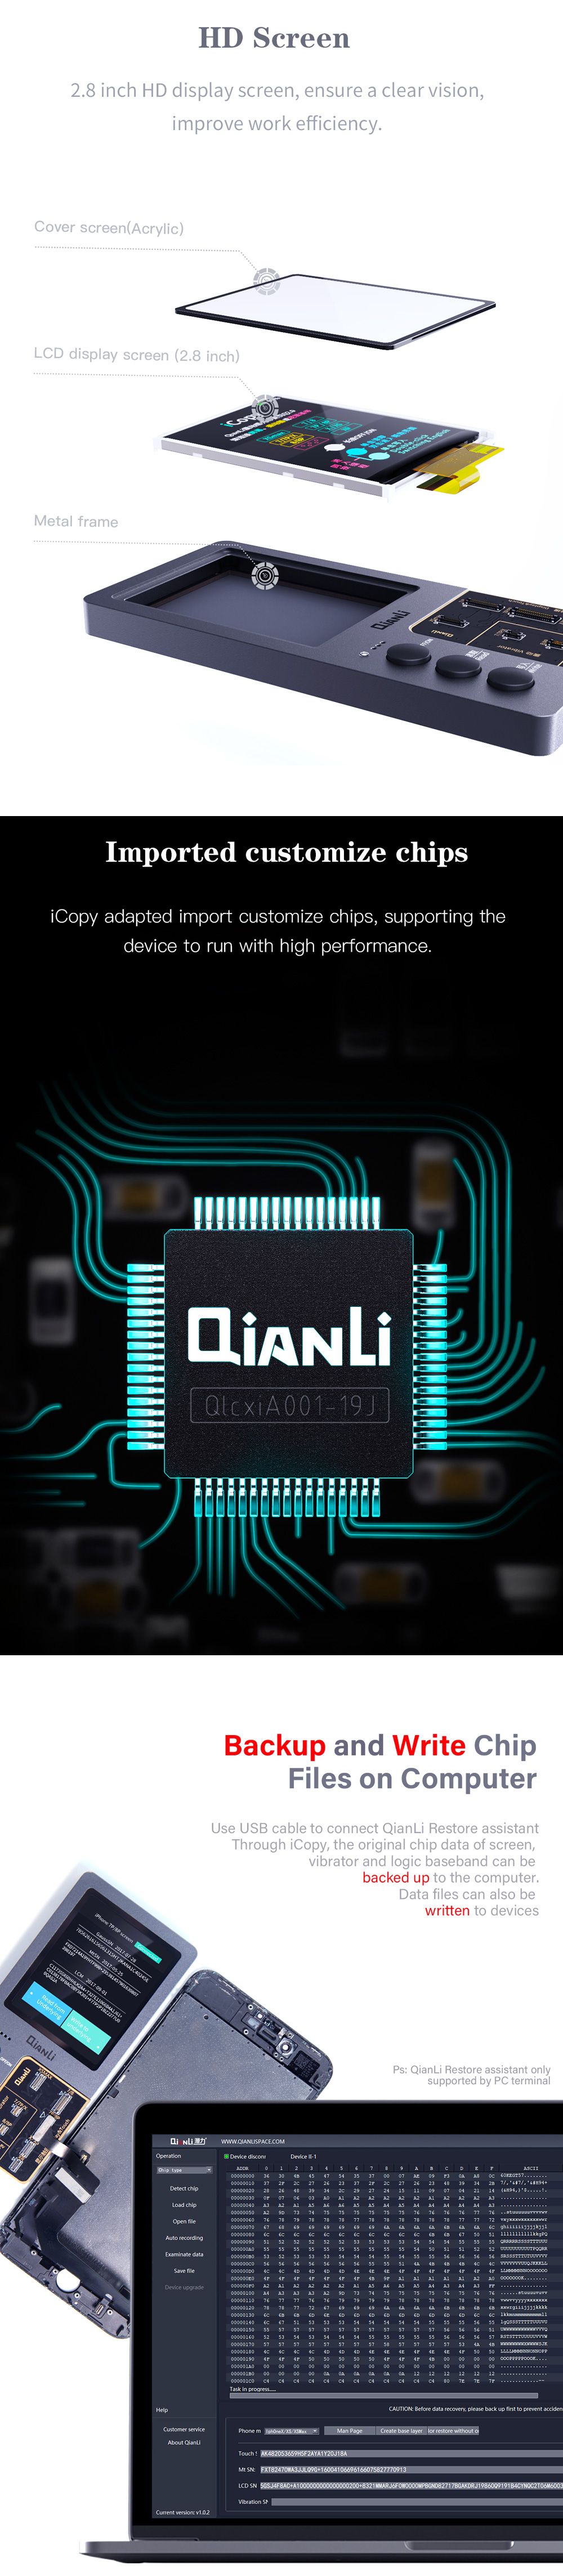 Qianli-iCopy-LCD-Screen-Original-Color-Repair-Programmer-Tool-for-iPhone-XR-XSMAX-XS-8P-8-7P-7-Vibra-1551729